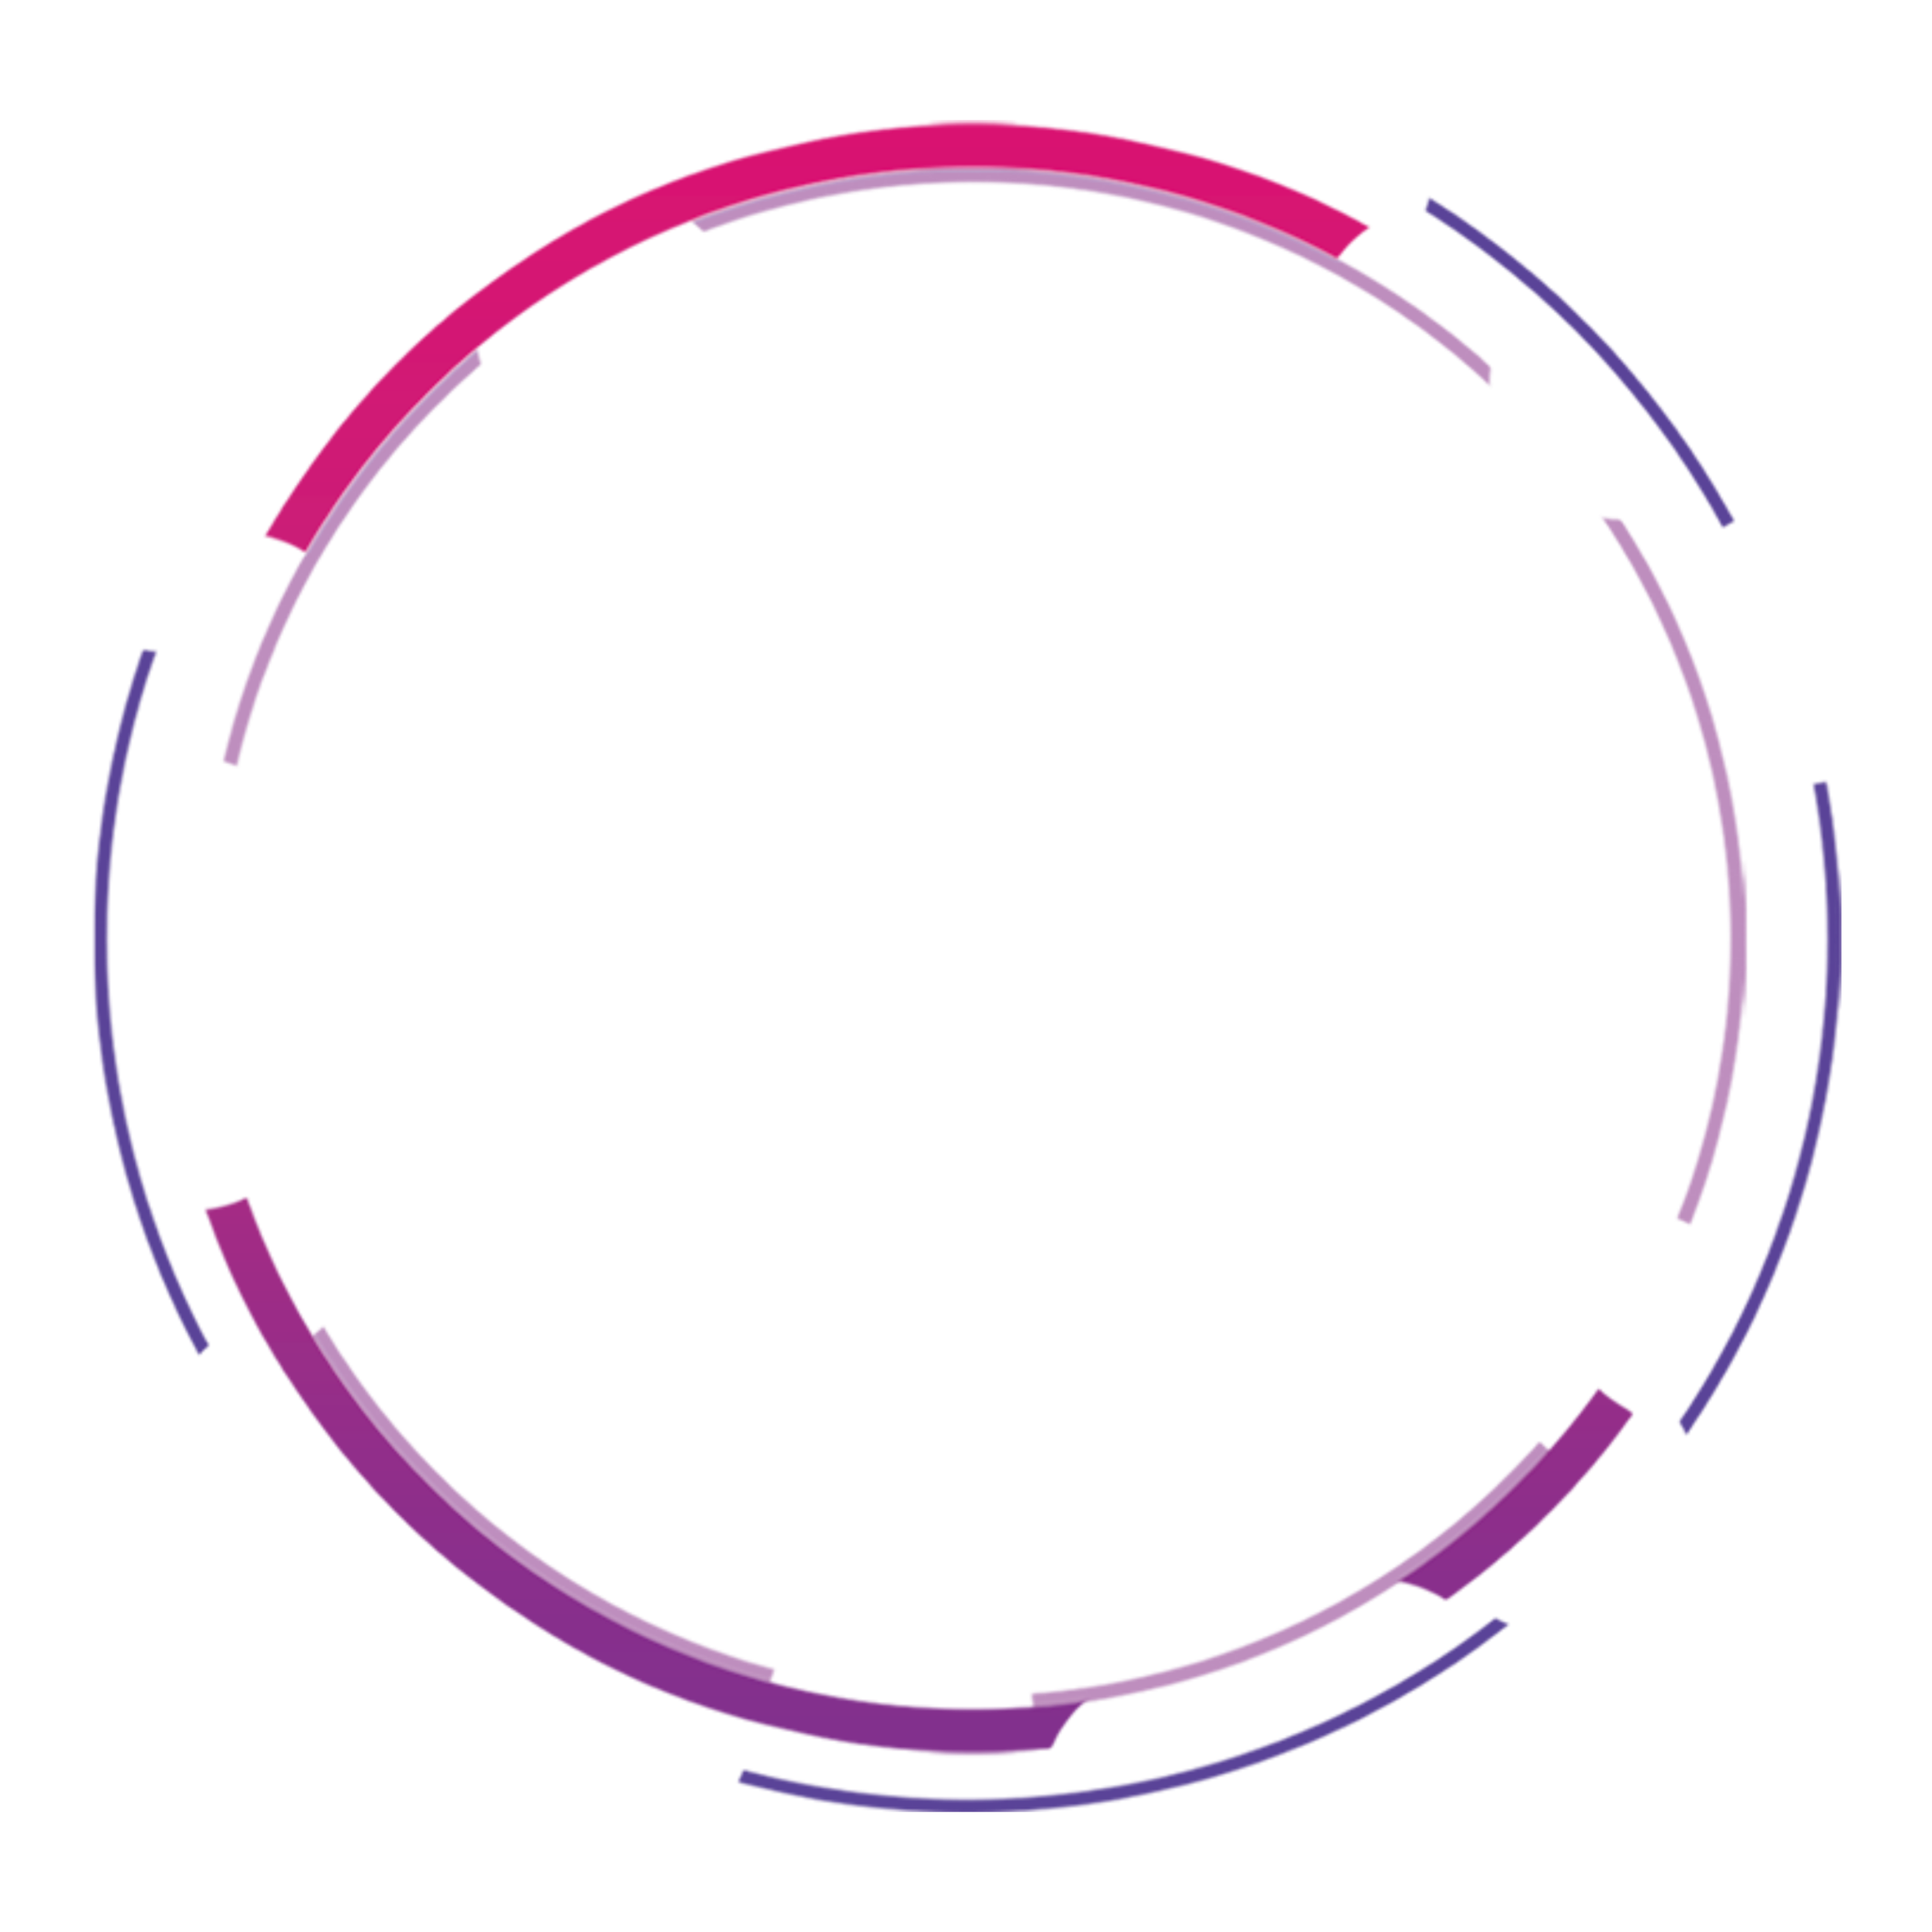 Фон для логотипа png. Круг без фона. Красивый круг для фотошопа. Фиолетовый круг. Круг на прозрачном фоне.